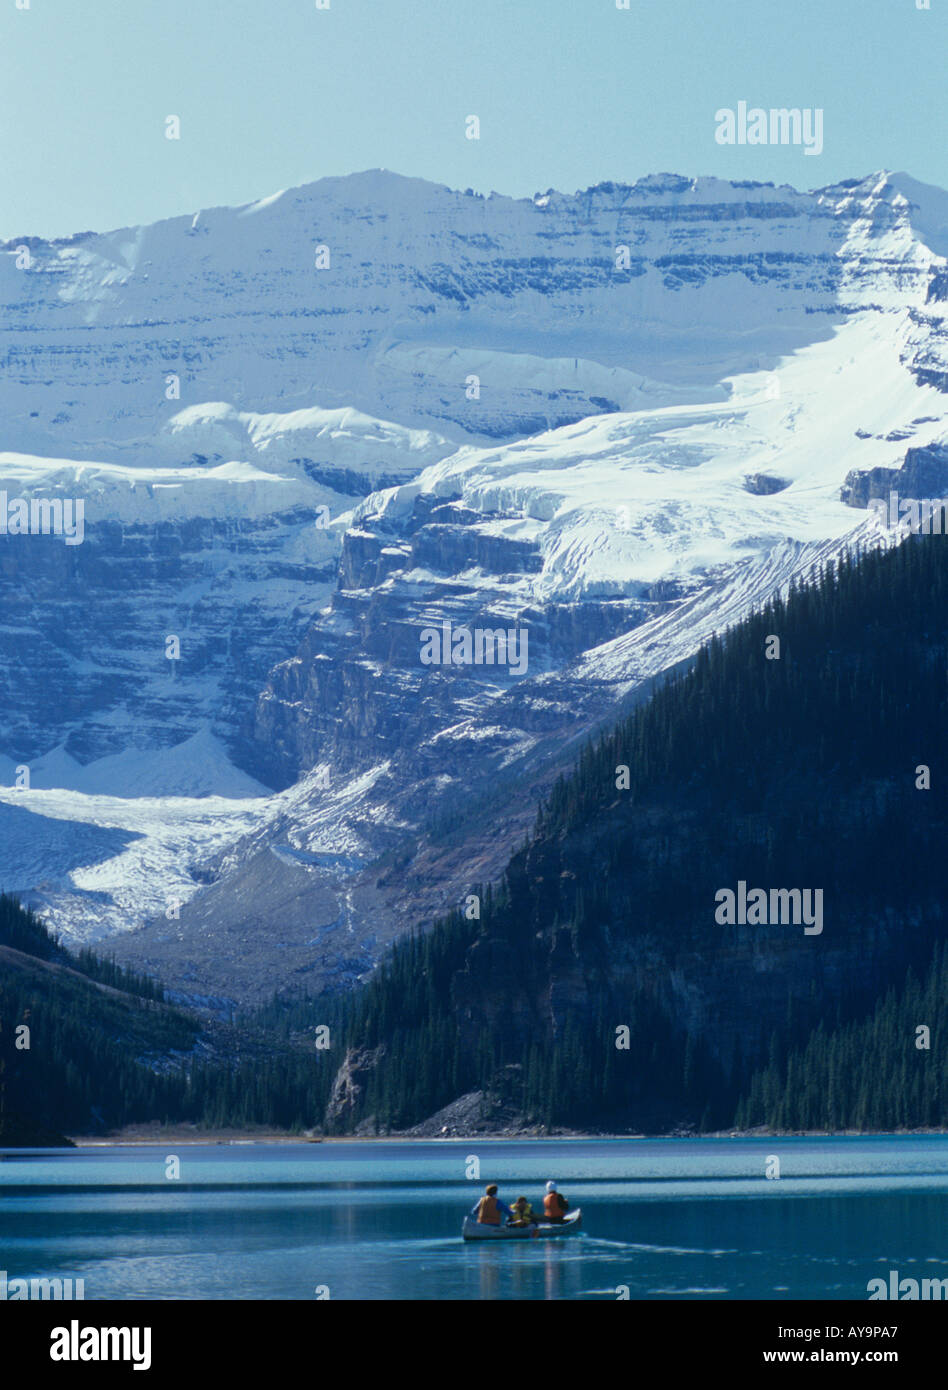 Besucher nach Lake Louise im Banff Nationalpark paddeln Kanu unter Schnee bedeckt Gipfeln Alberta Kanada Stockfoto